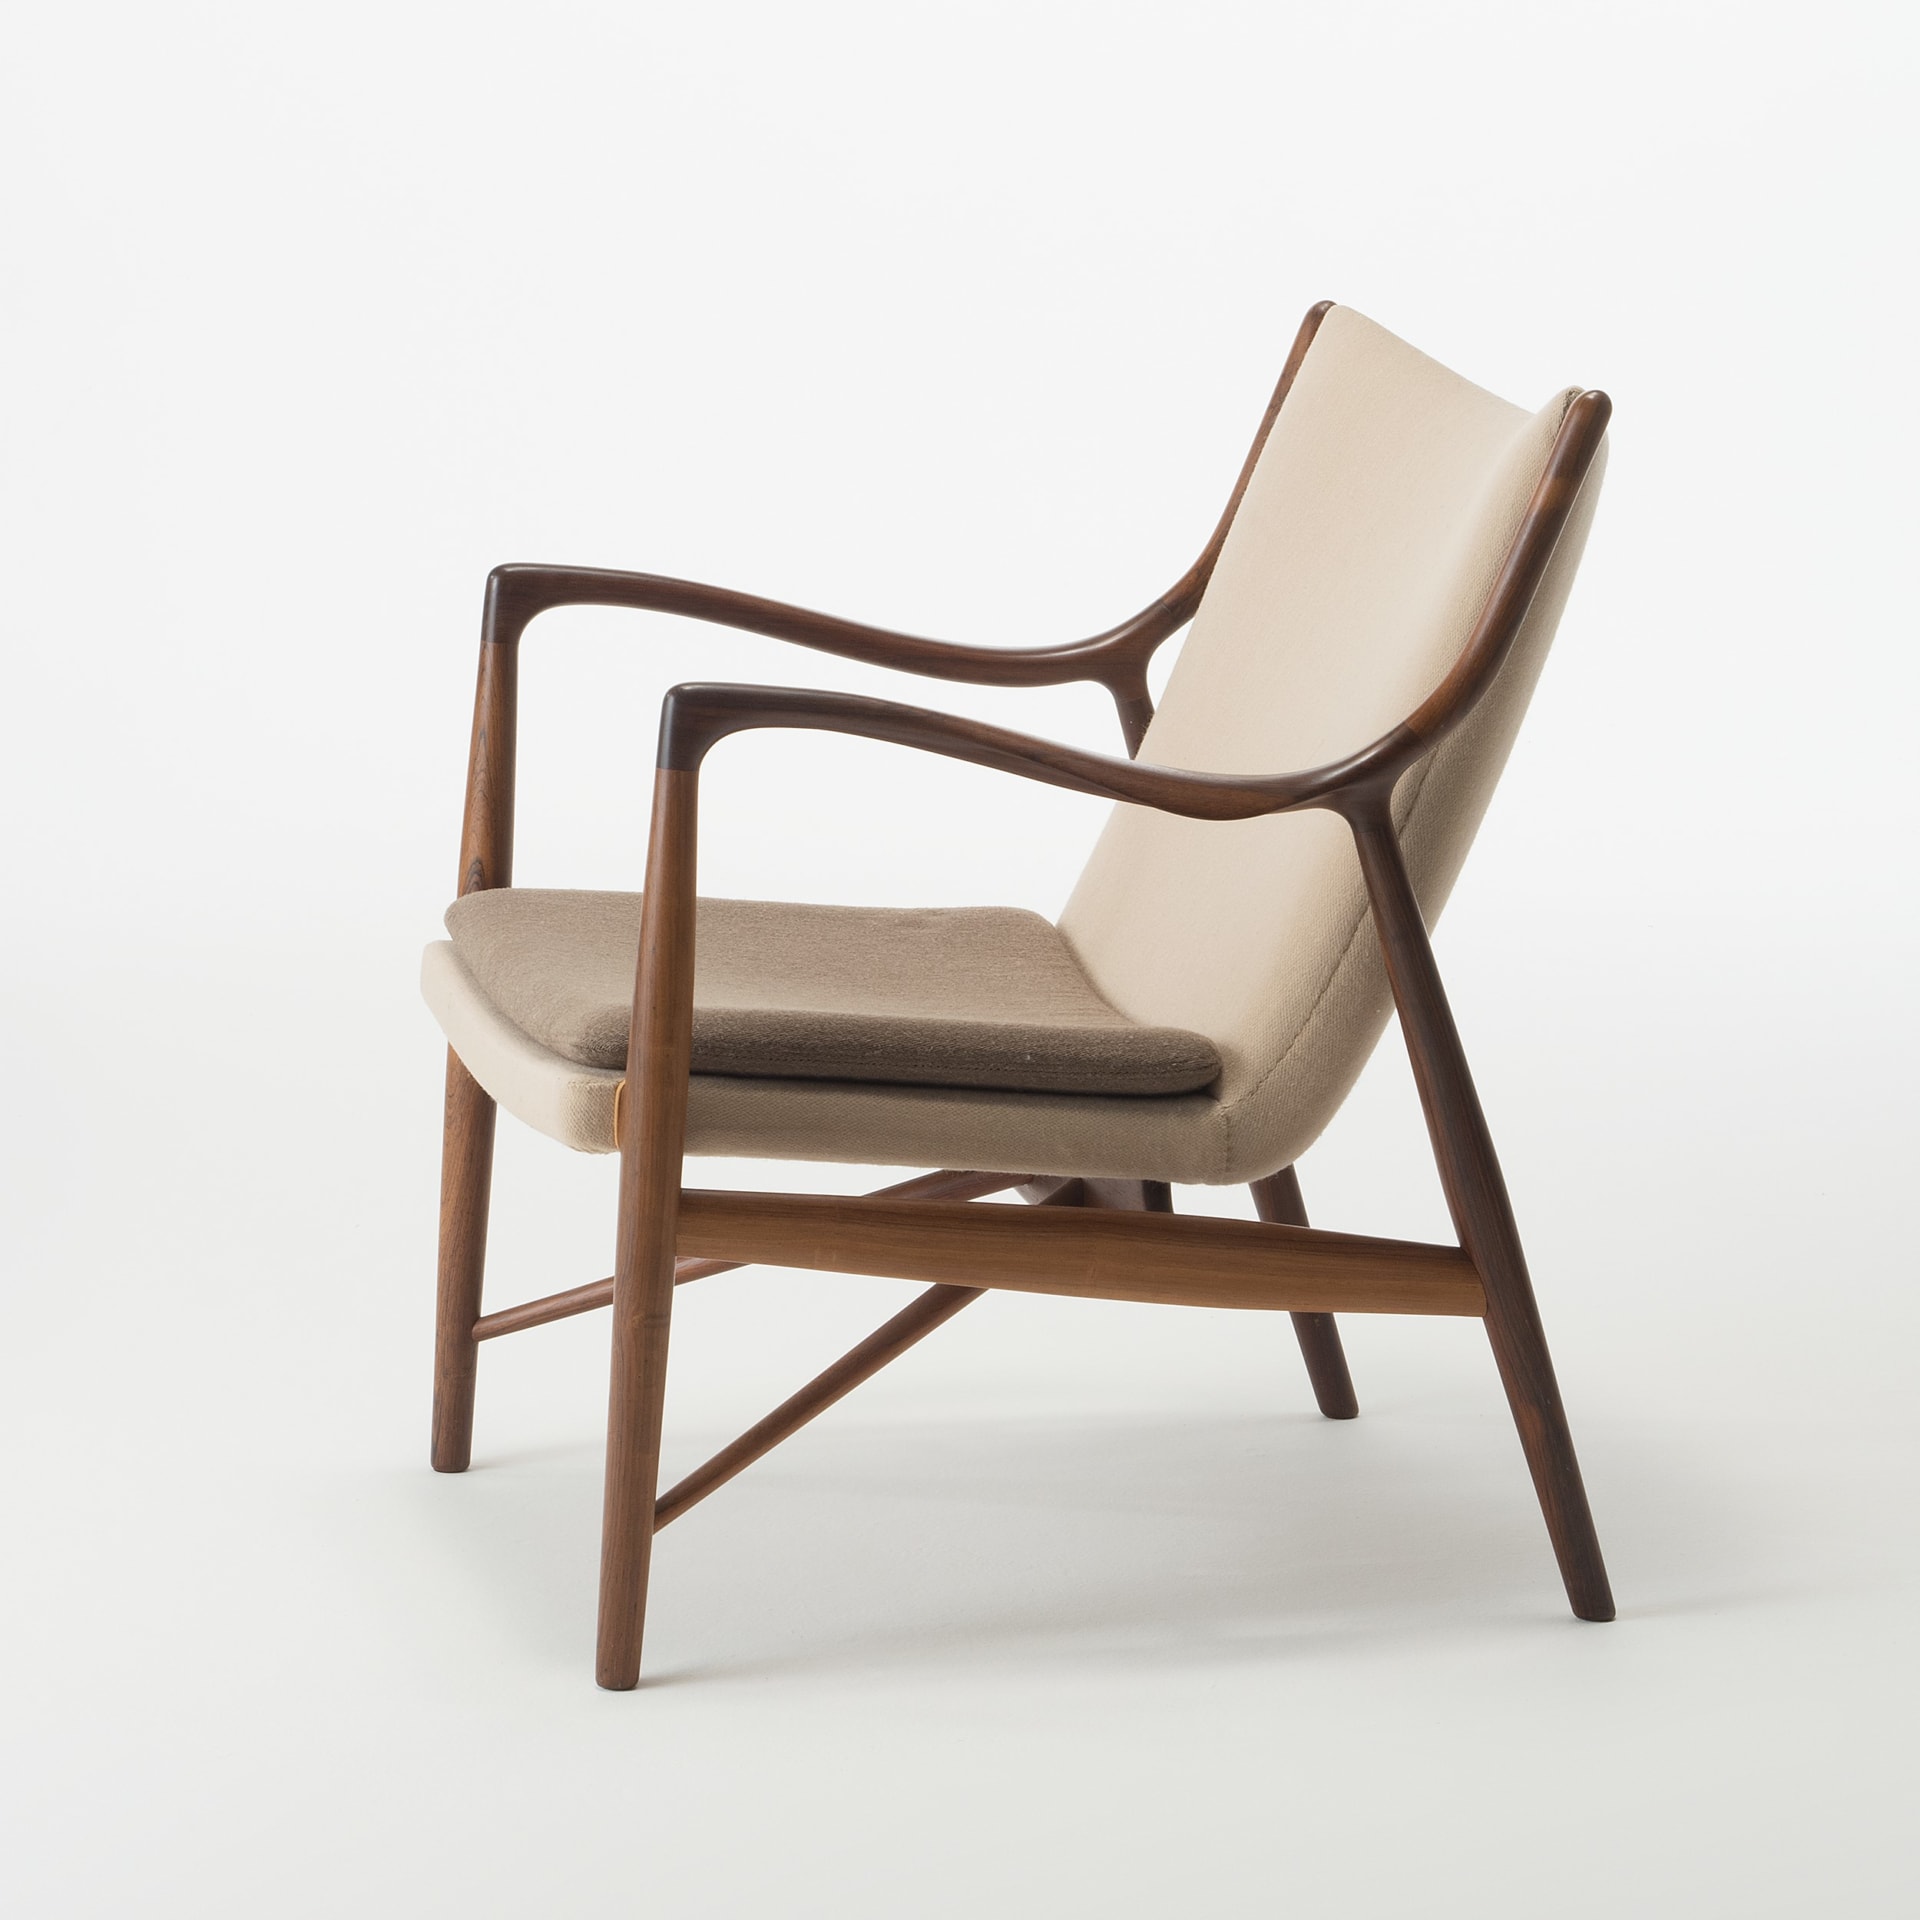 熱い販売 【絶版】「フィン・ユールとデンマークの椅子」2022年 東京都 